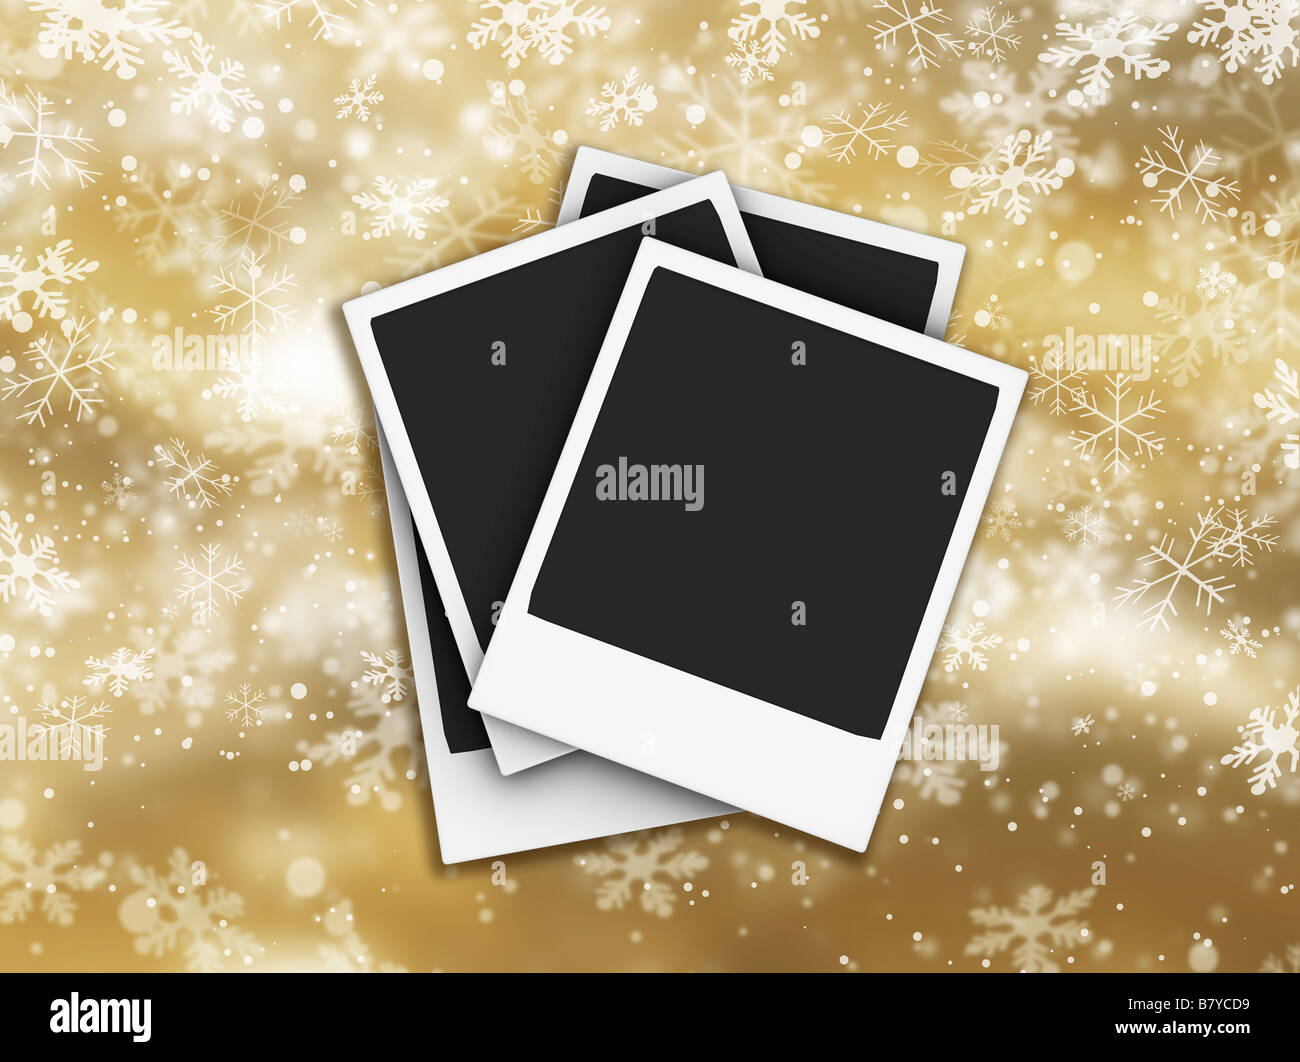 Polaroids on golden background of falling snowflakes Stock Photo